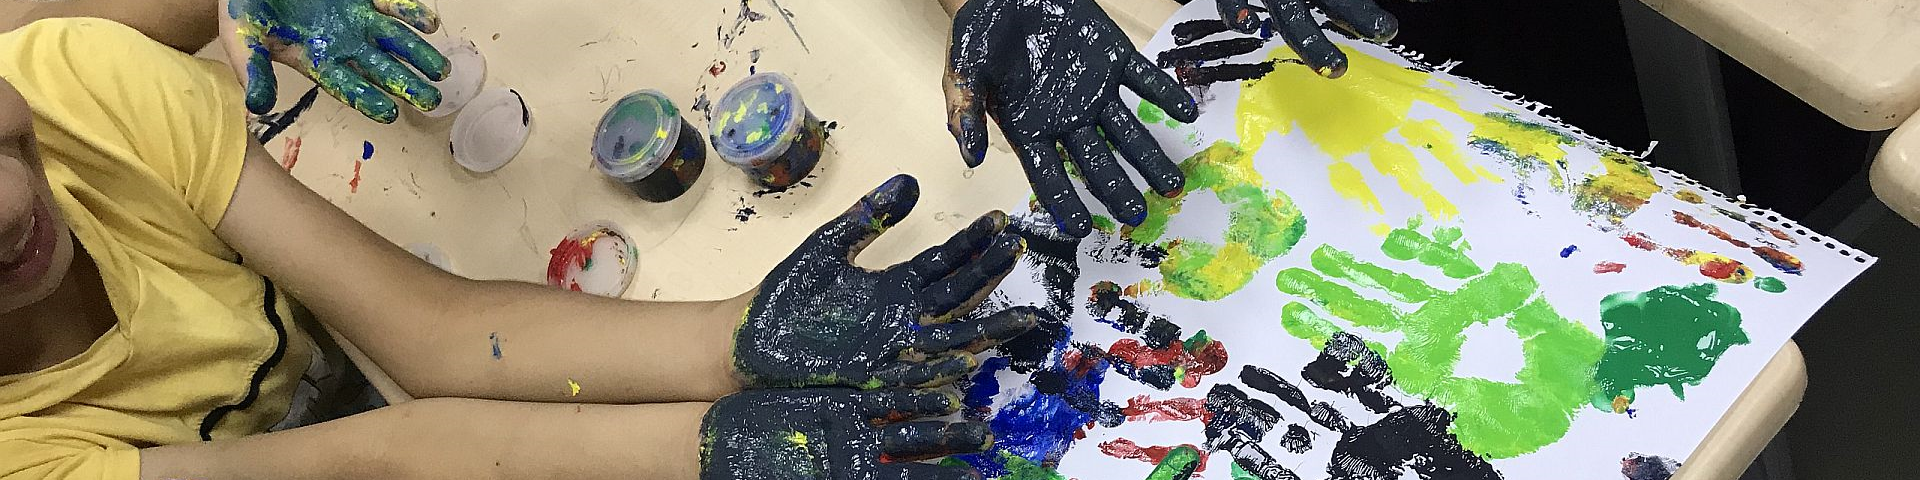 Kinder malen mit Fingerfarben.